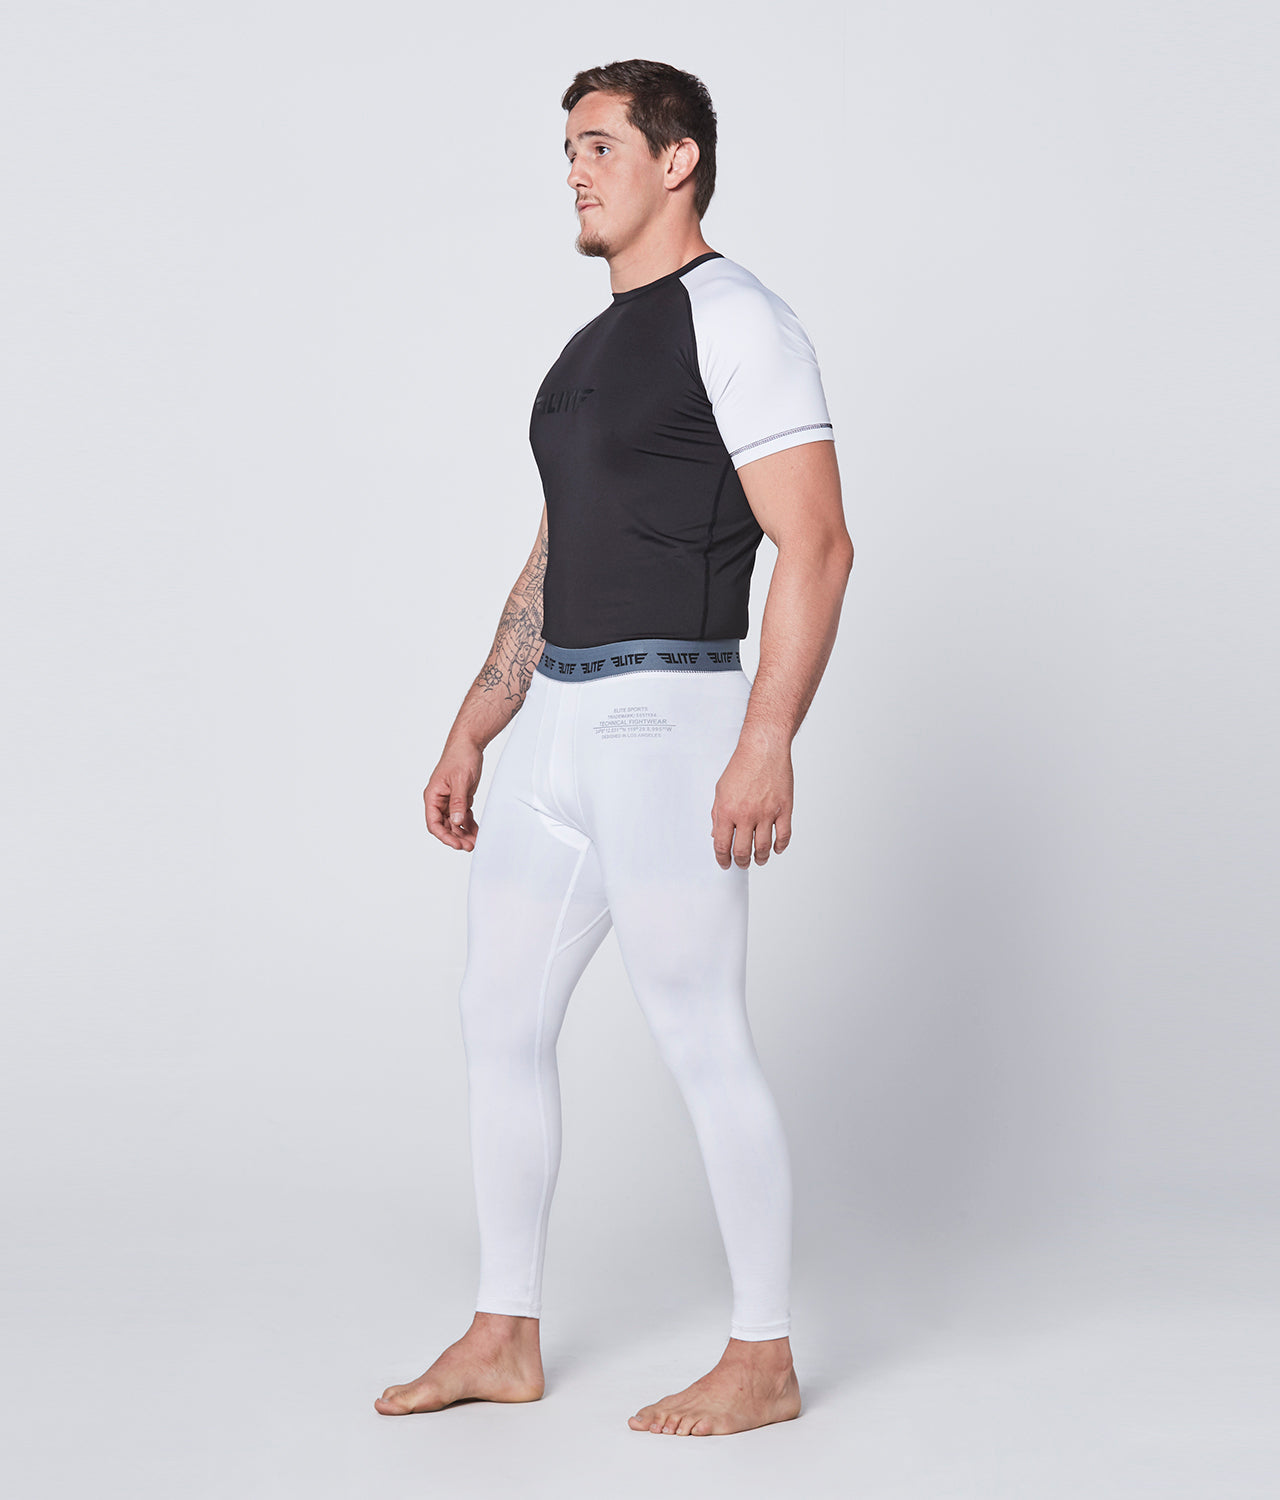 Men's Plain White Compression Training Spat Pants